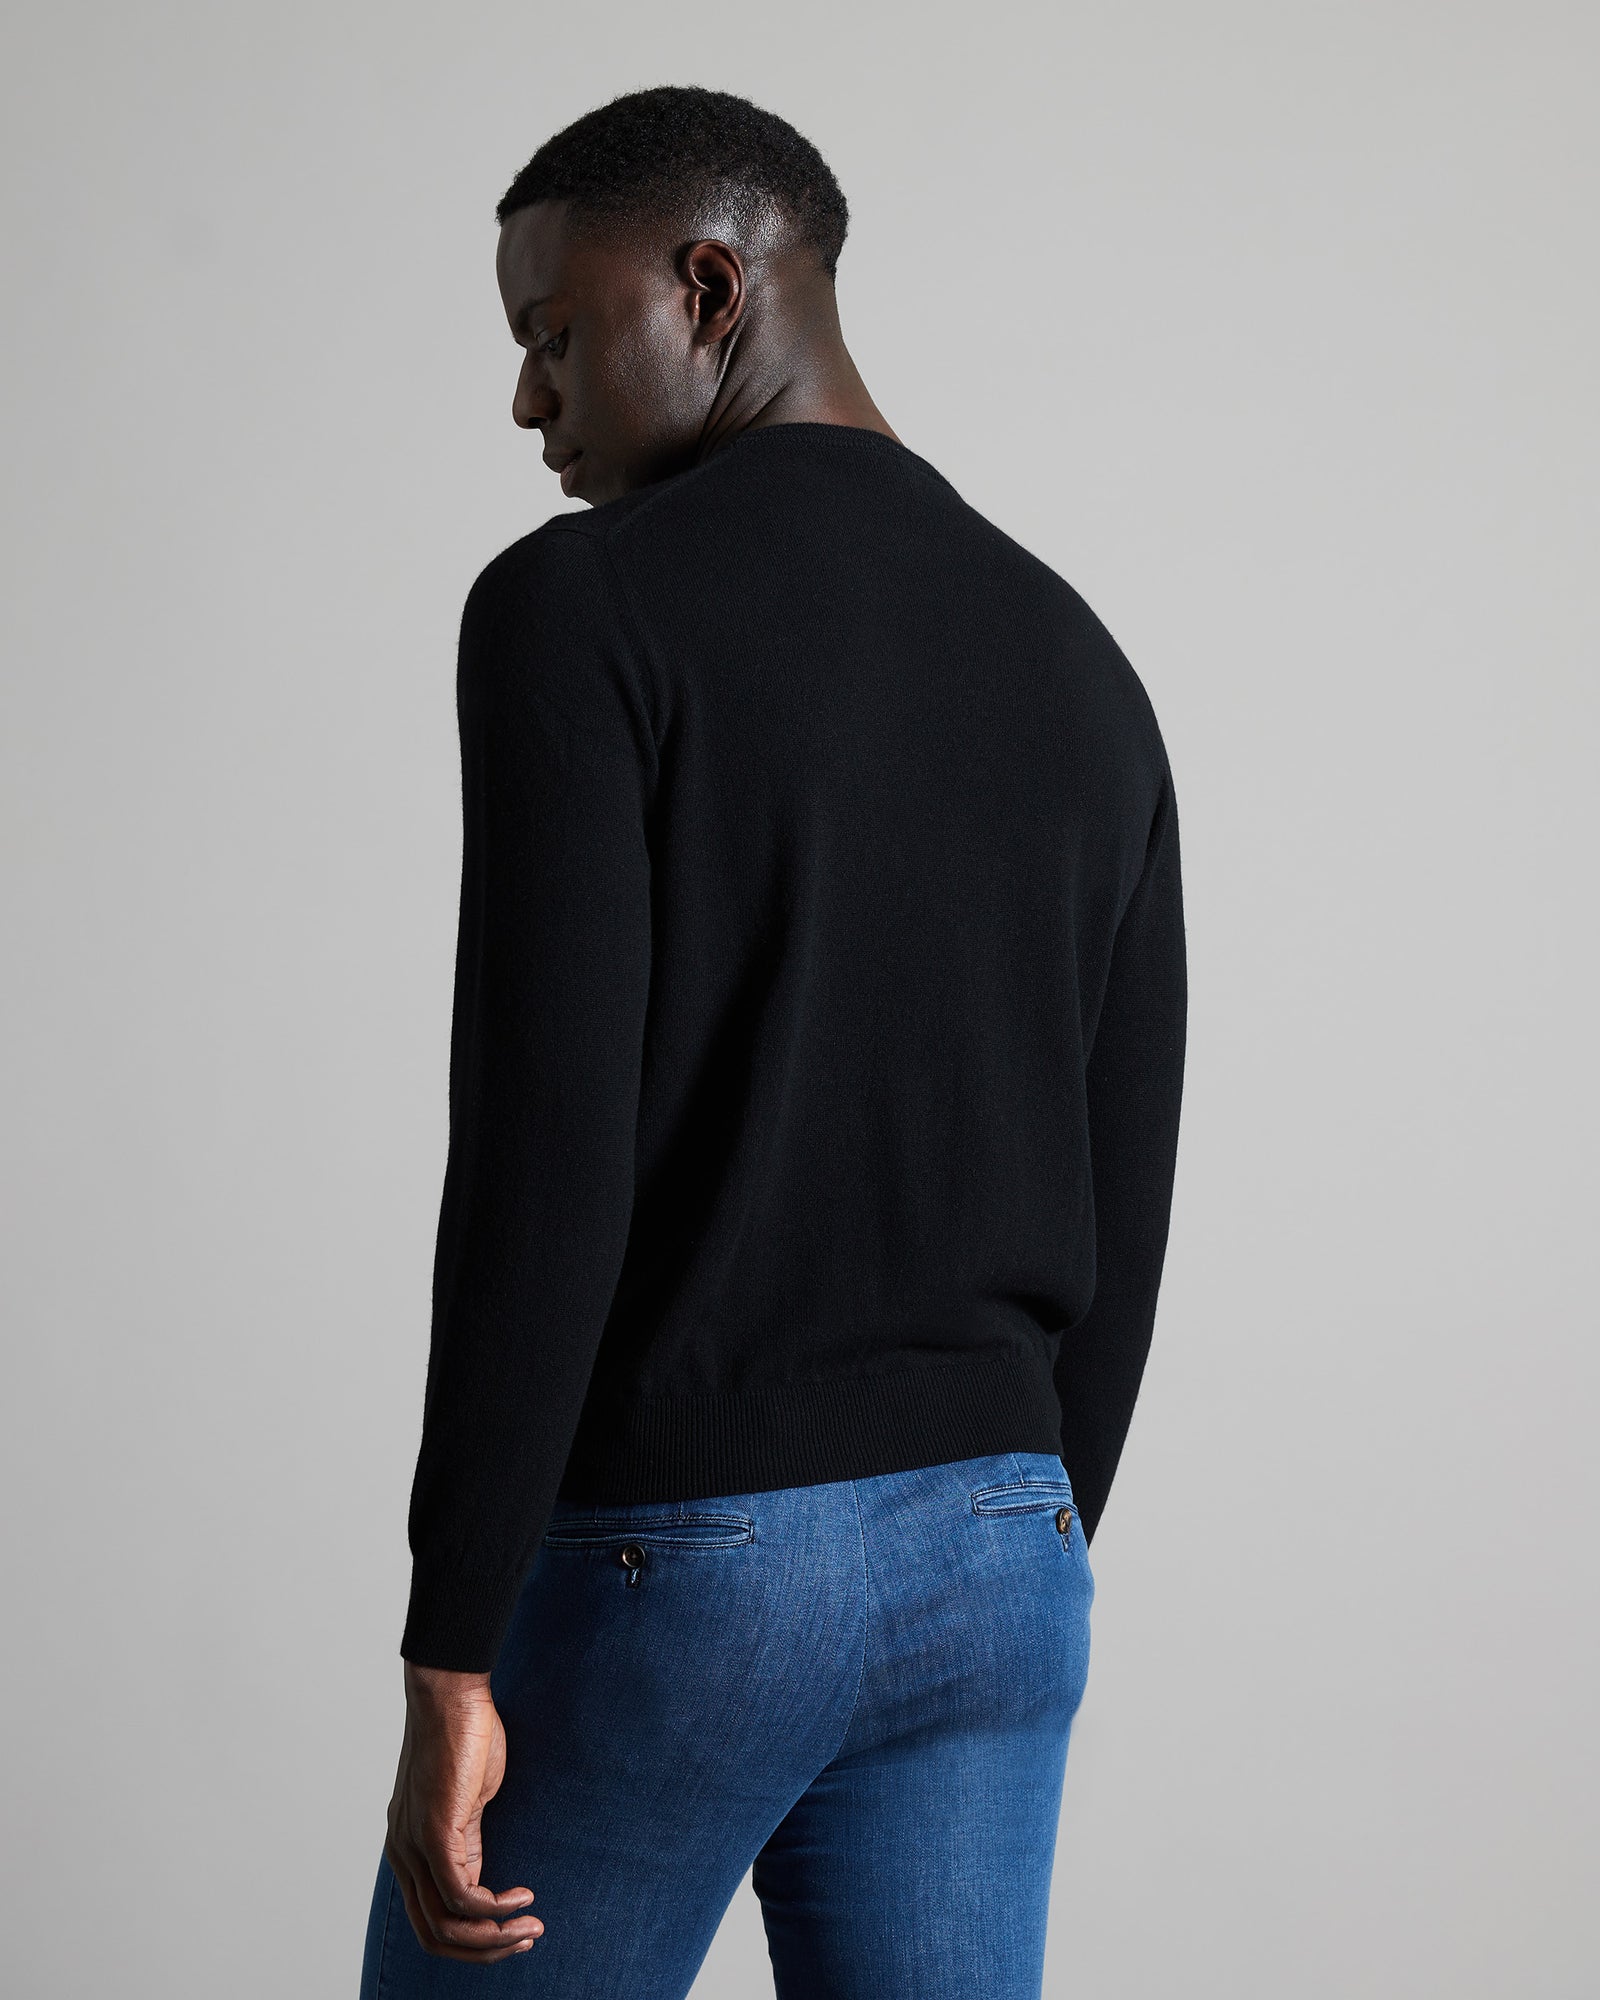 Black kid cashmere round-neck sweater